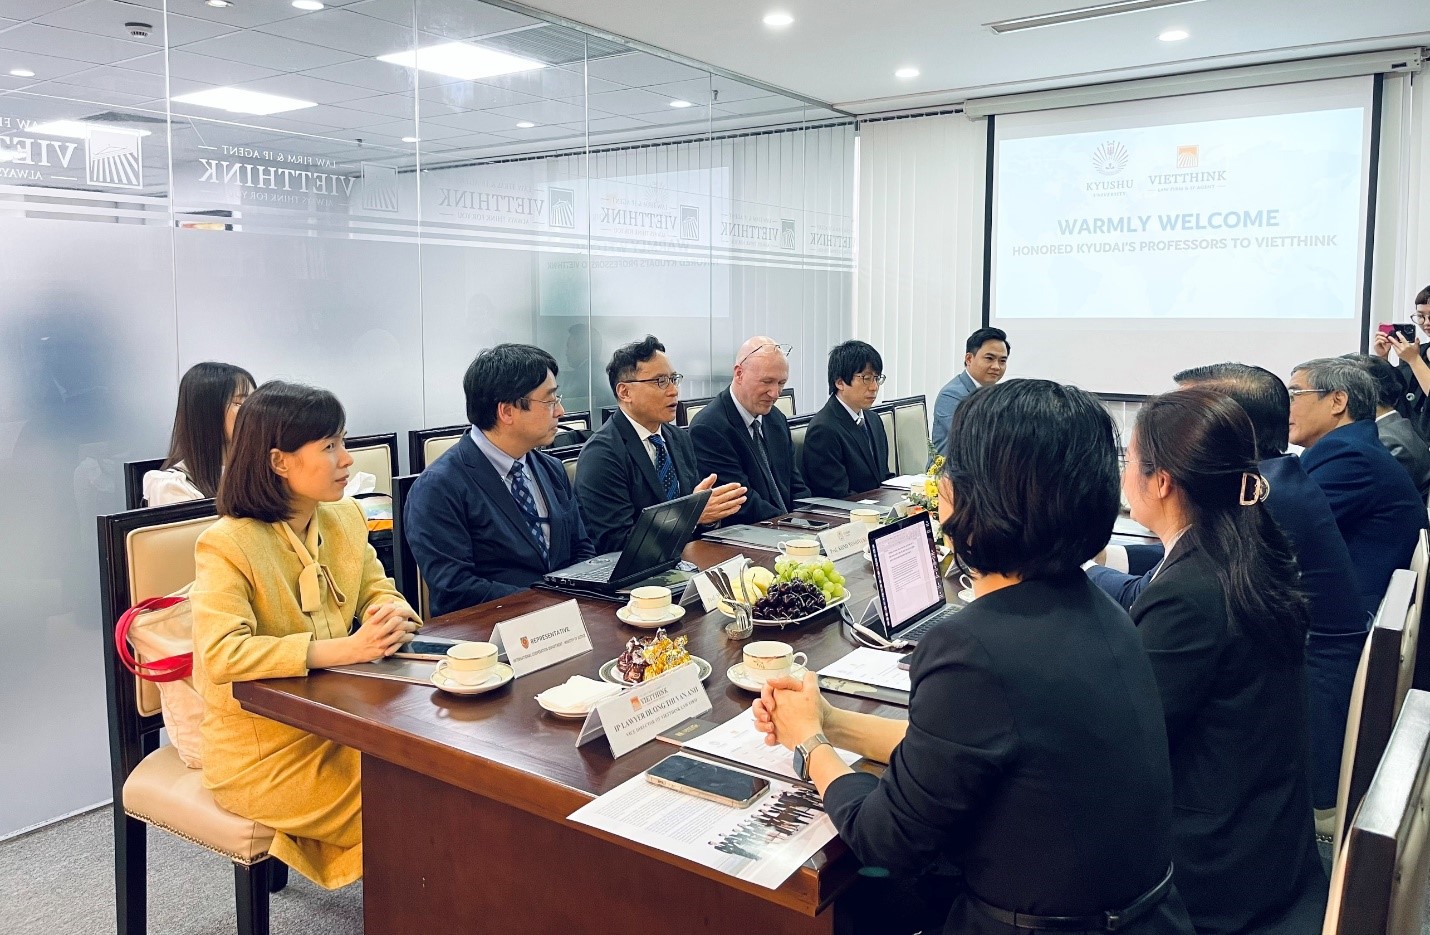 Đoàn giáo sư Đại học Kyushu (Nhật Bản) thăm và làm việc tại Công ty Luật Vietthink